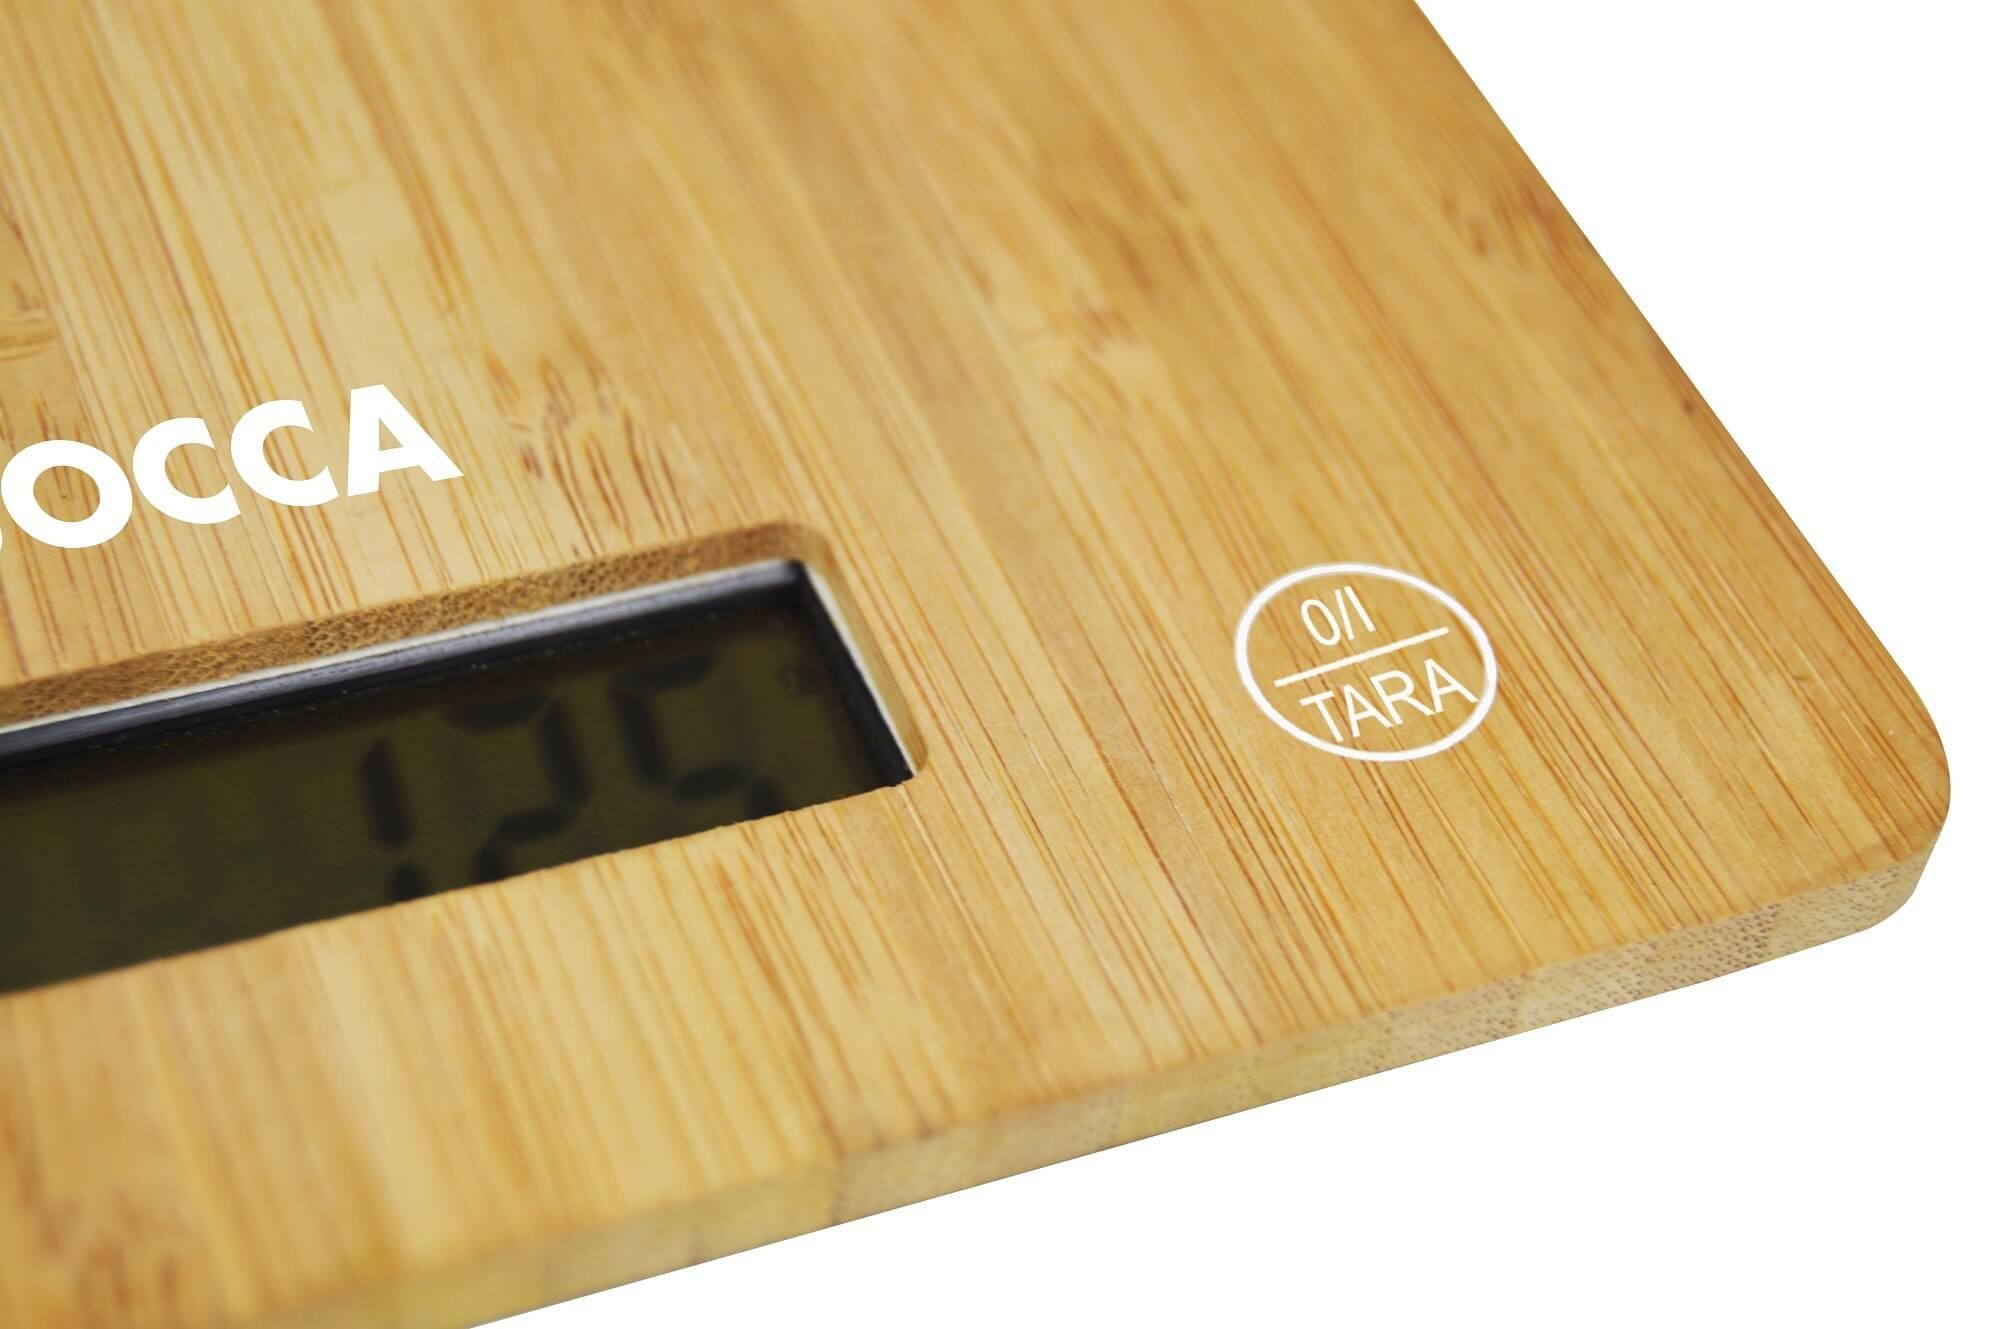 Jocca Küchenwaage elektronische kg, aus Küchenwaage bis Bambus, LCD Display, 5 Tara-Funktion